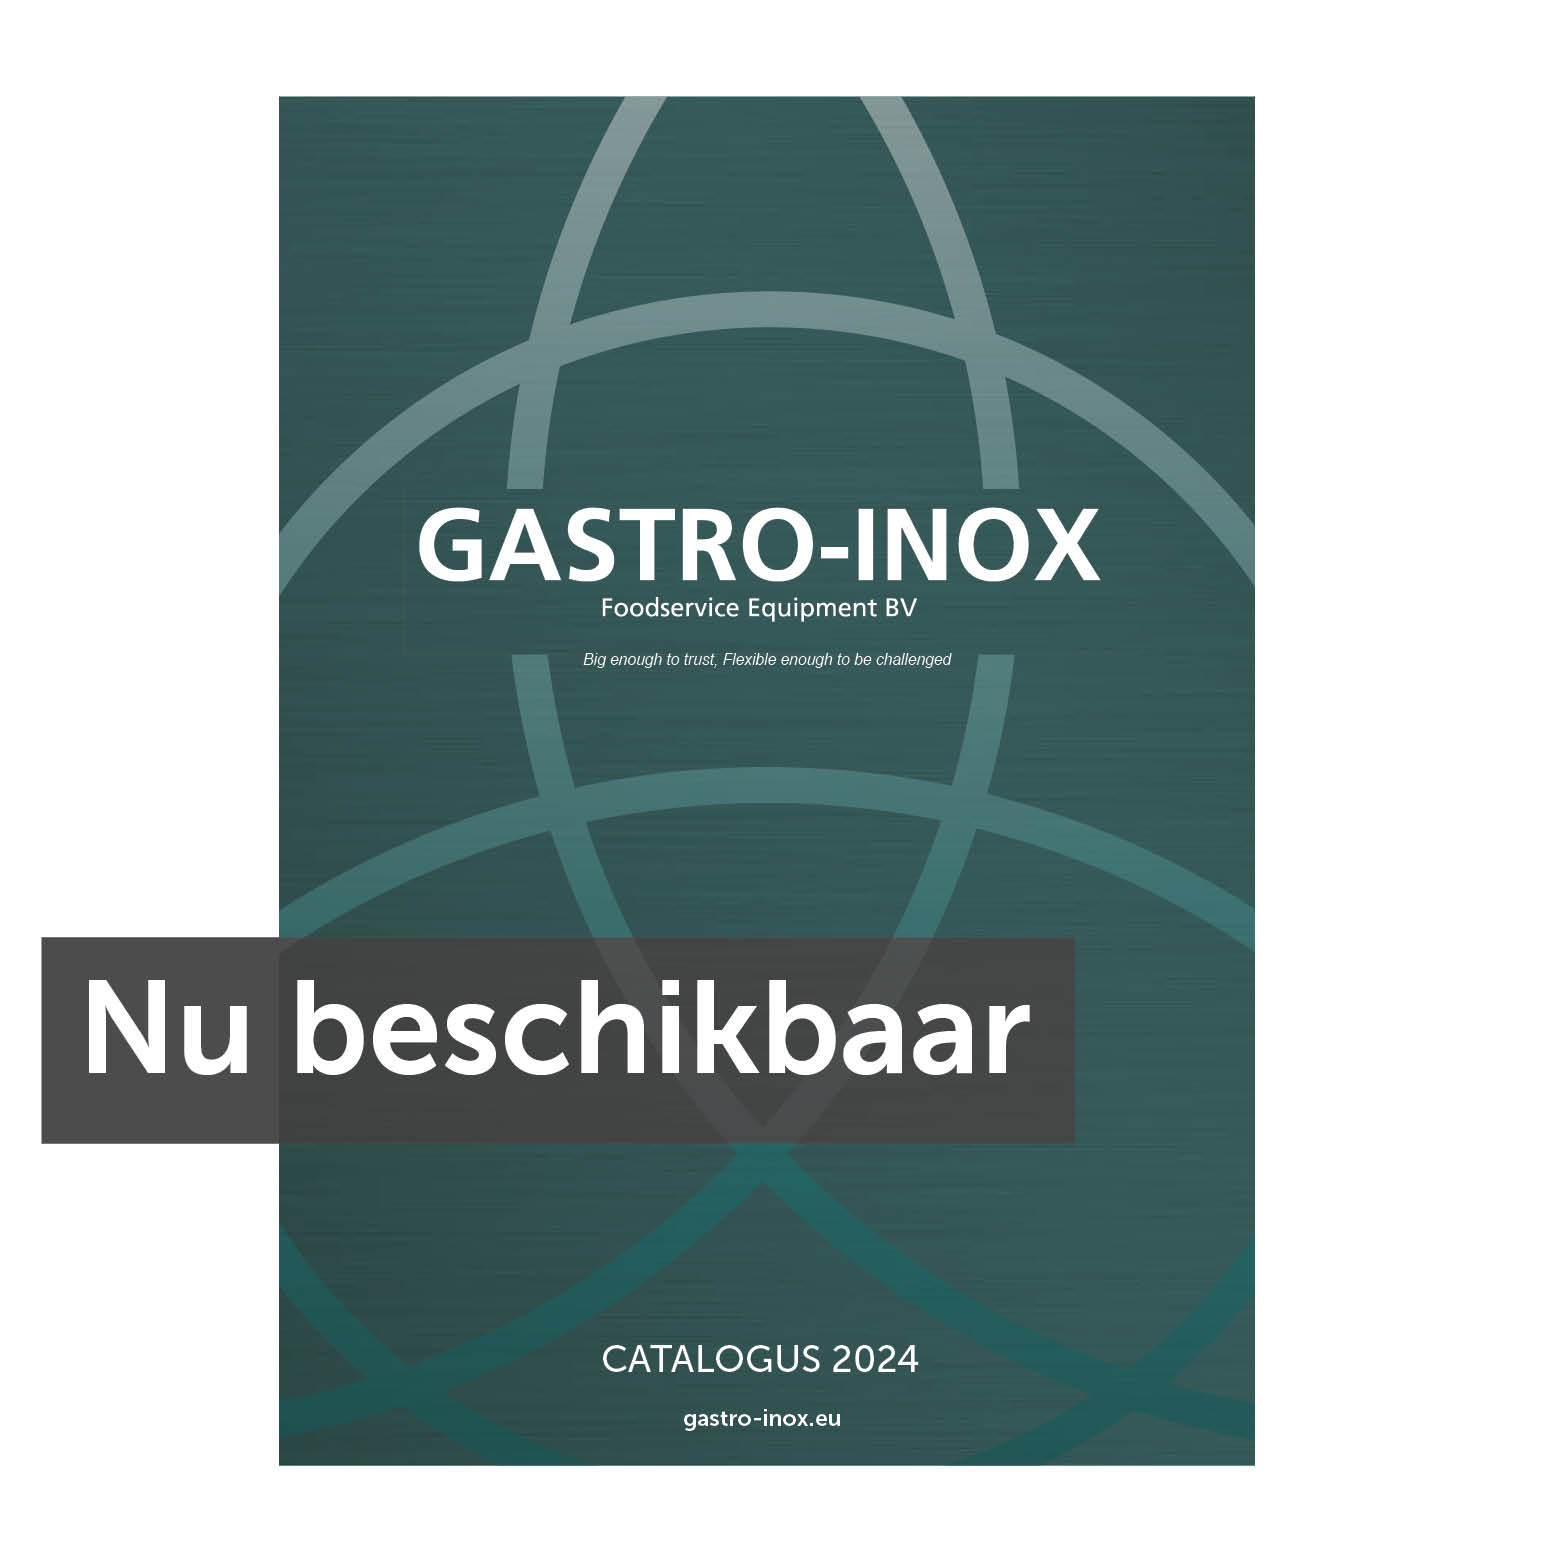 Estante de 4 niveles en acero inox ::. Gastroinox